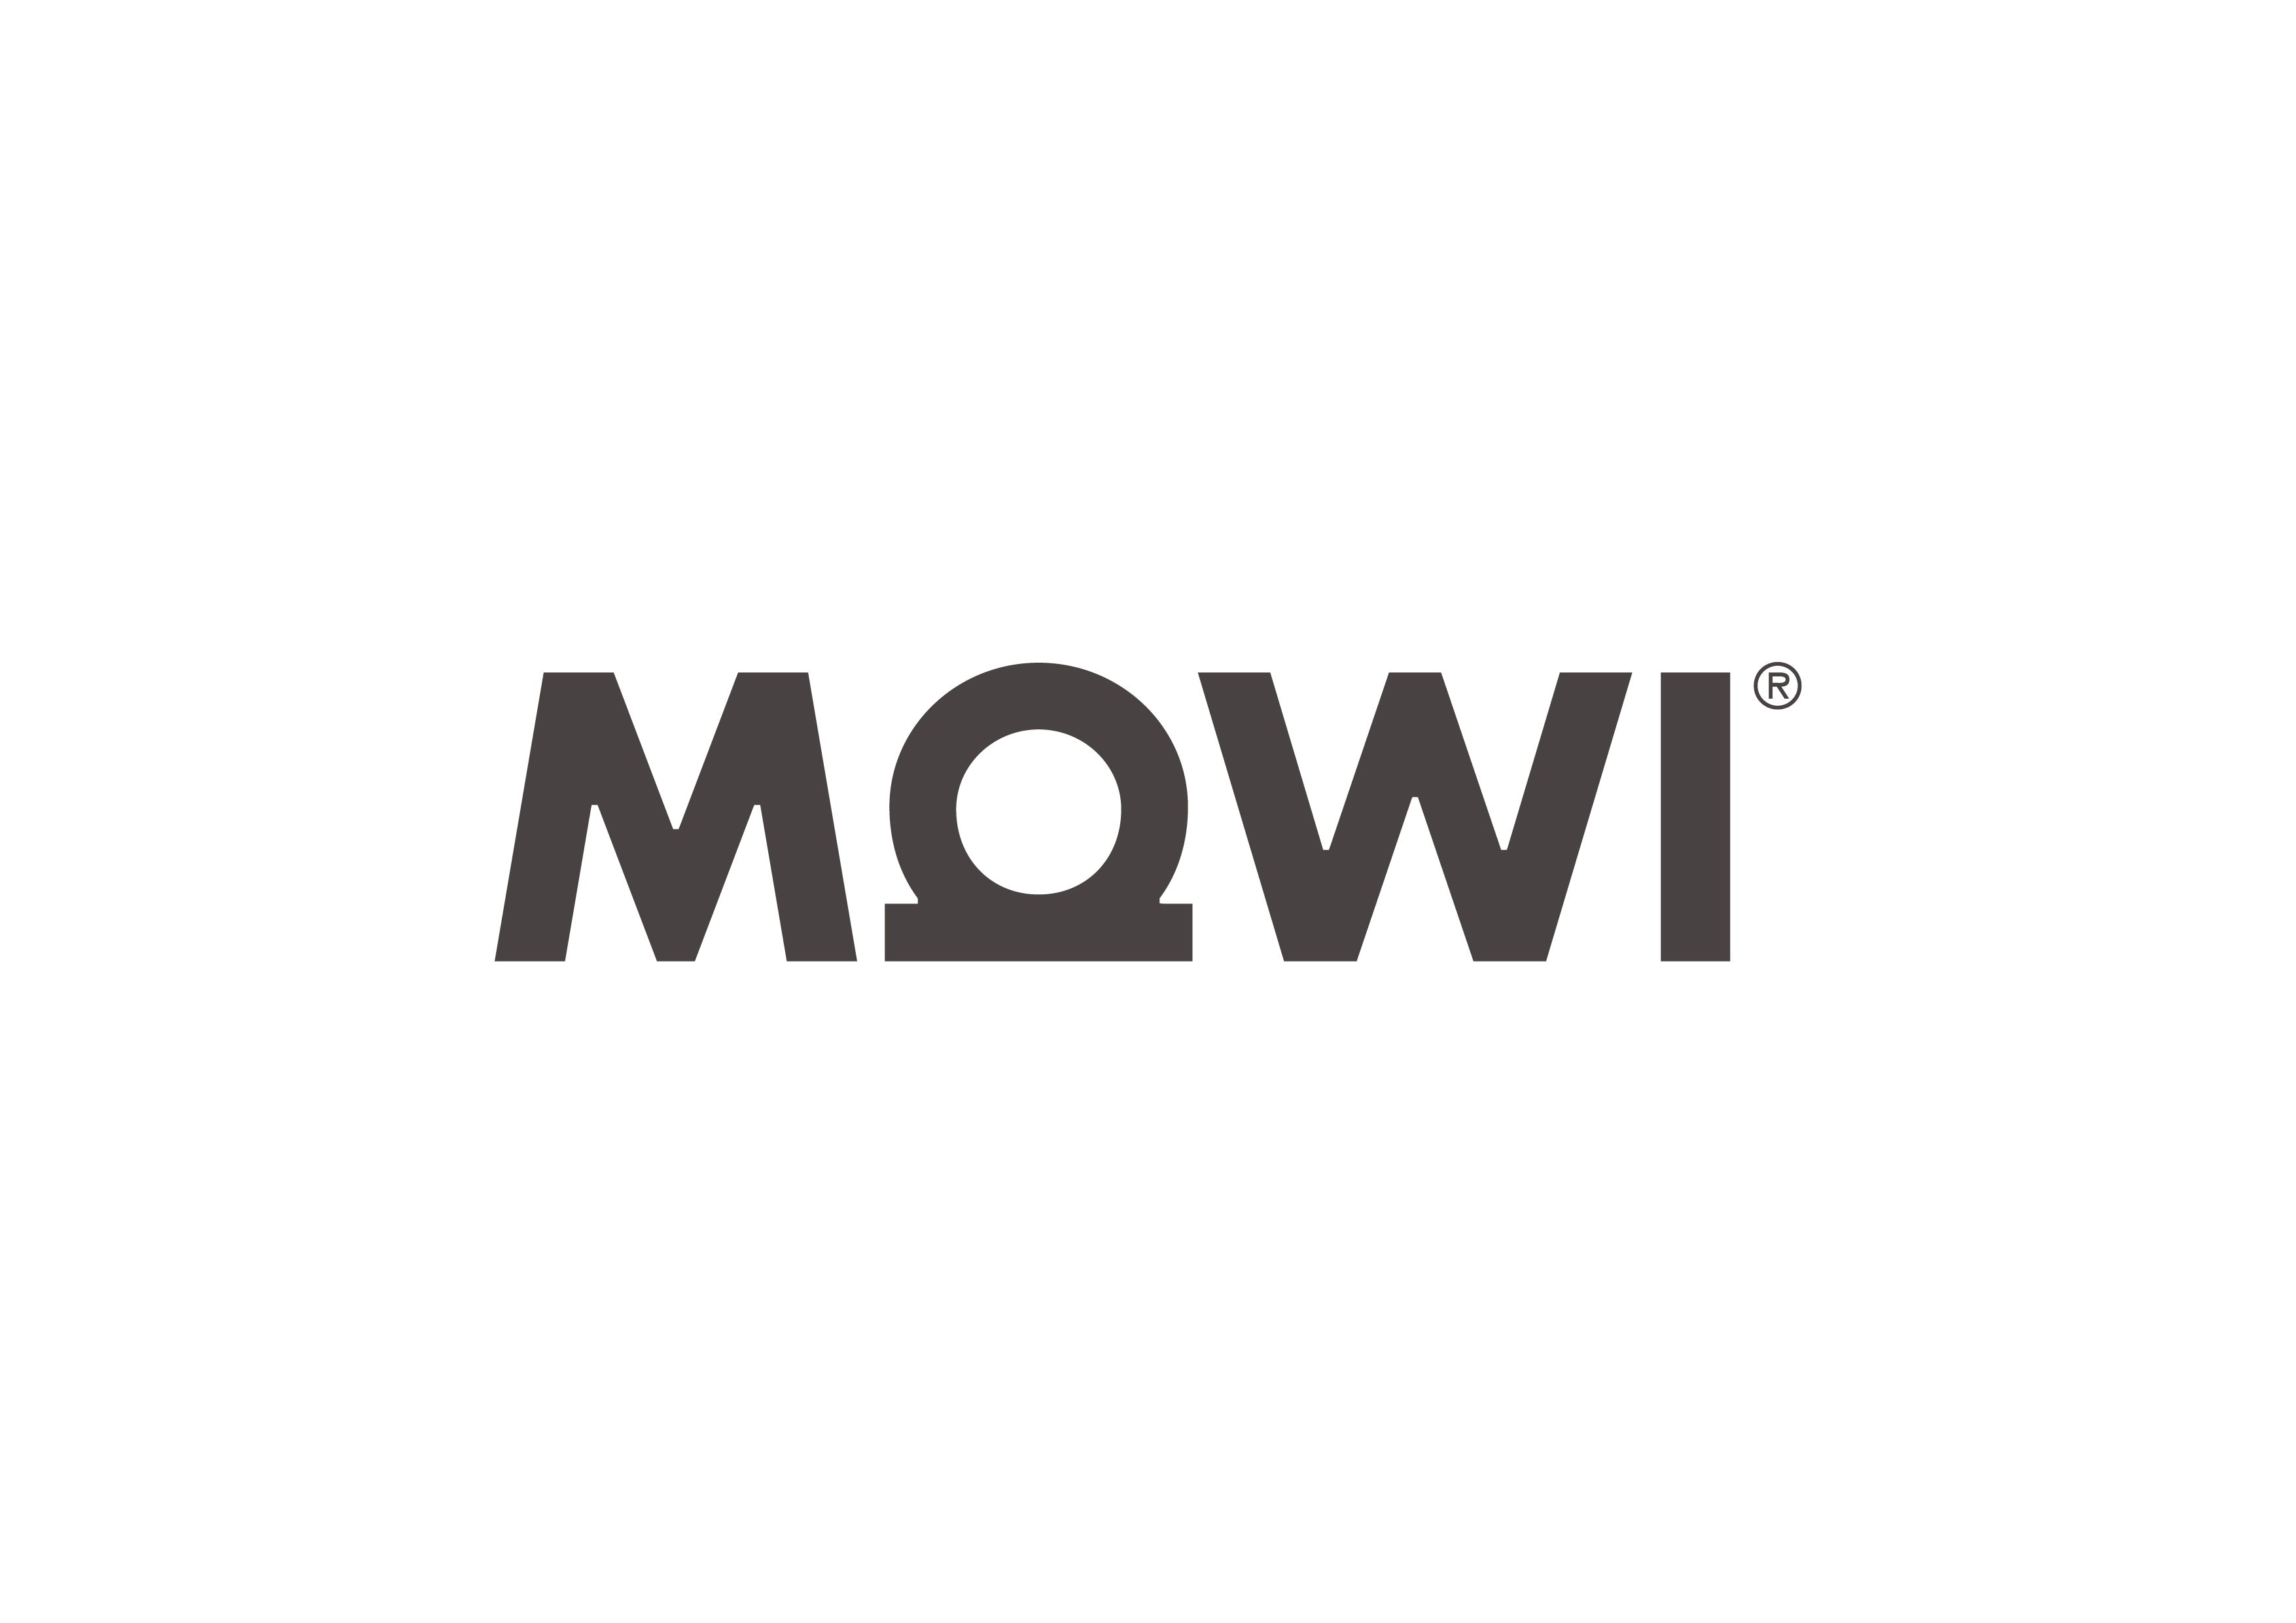 MOWI logotype